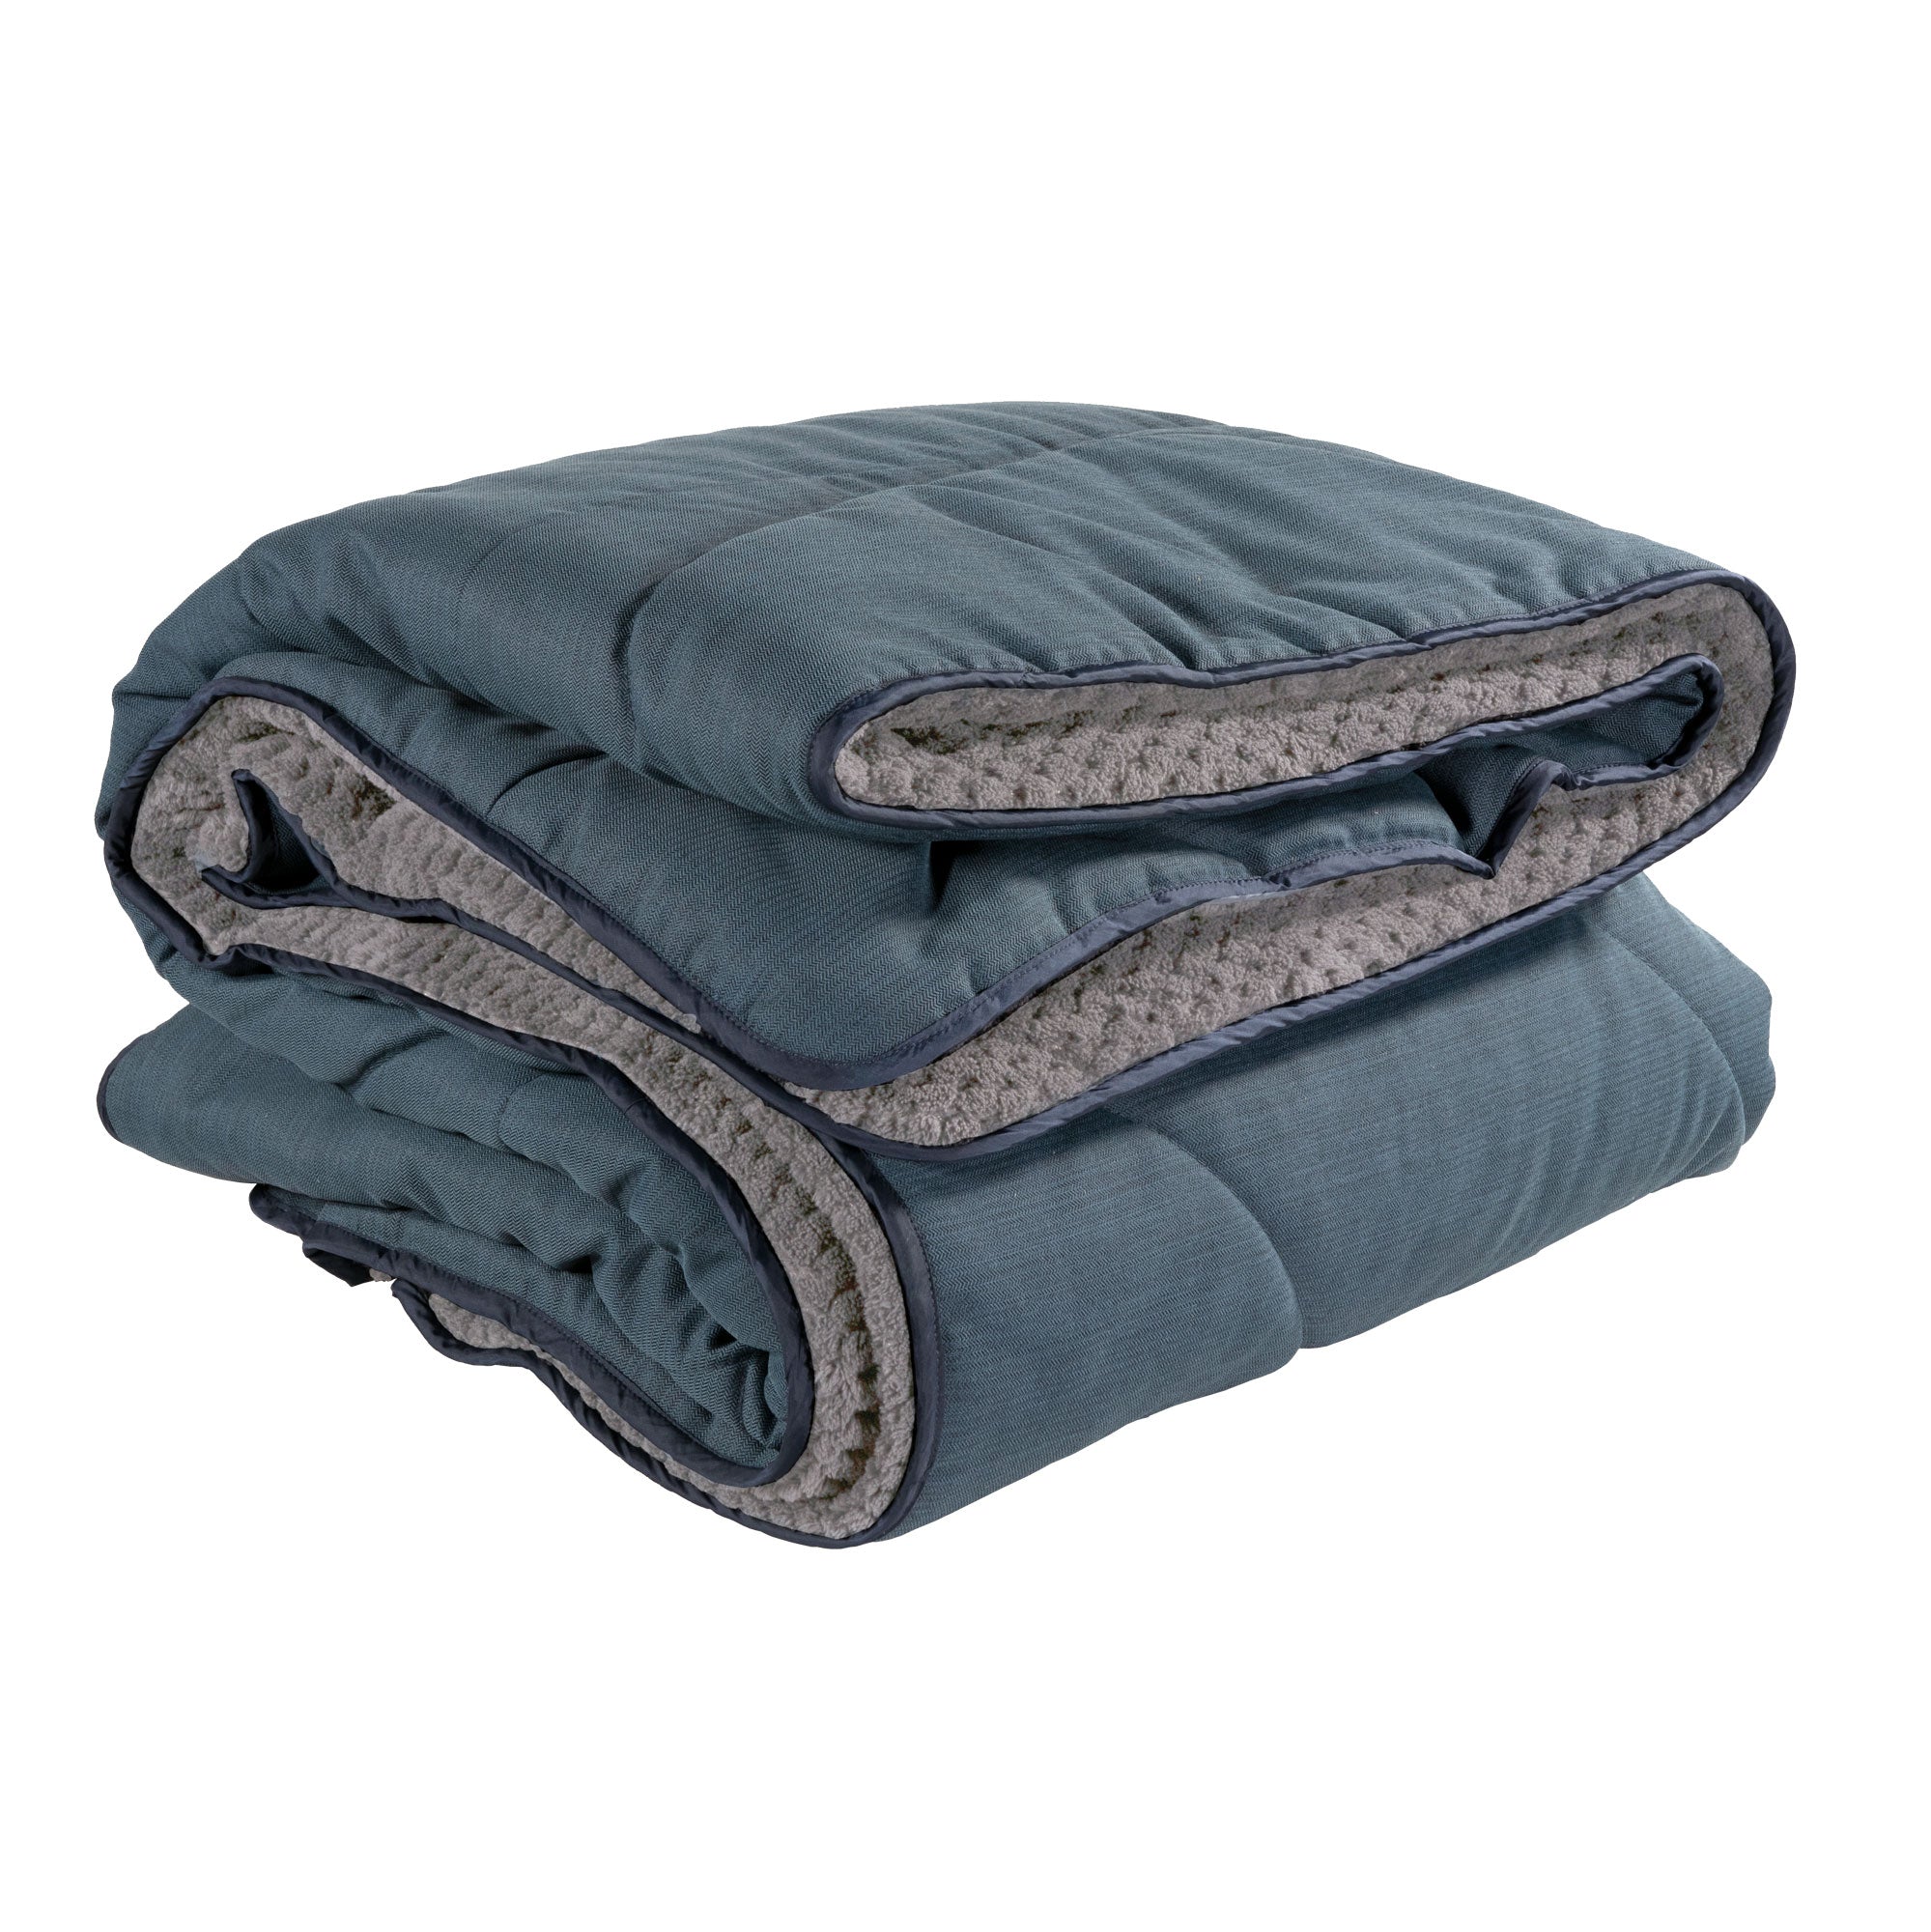 Homestead Cabin Comforter Blanket Accessories